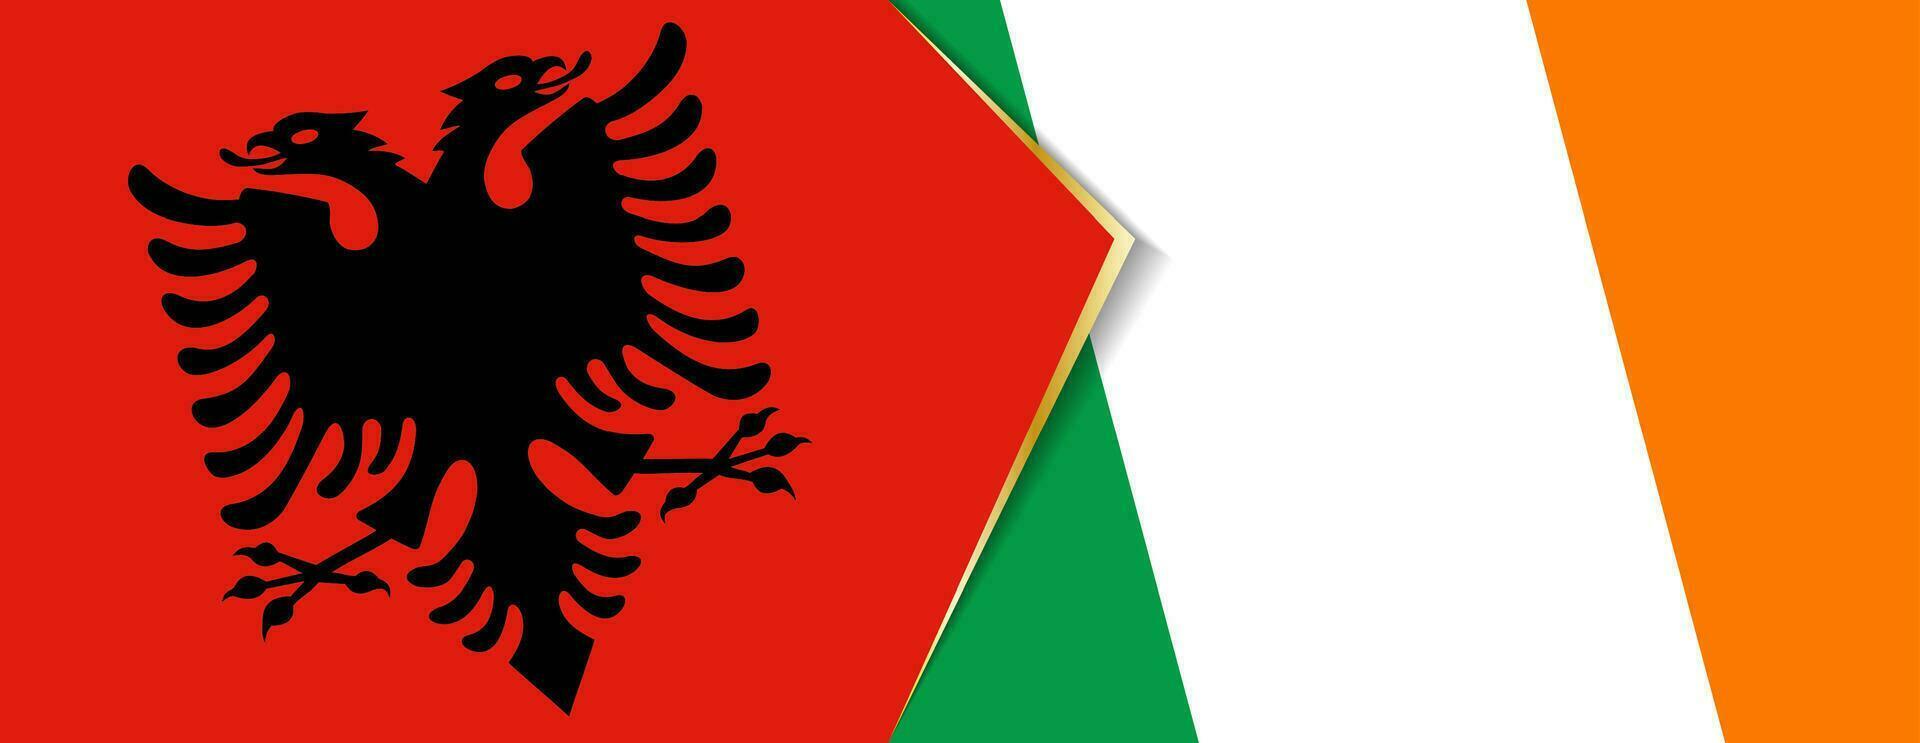 Albanien und Irland Flaggen, zwei Vektor Flaggen.